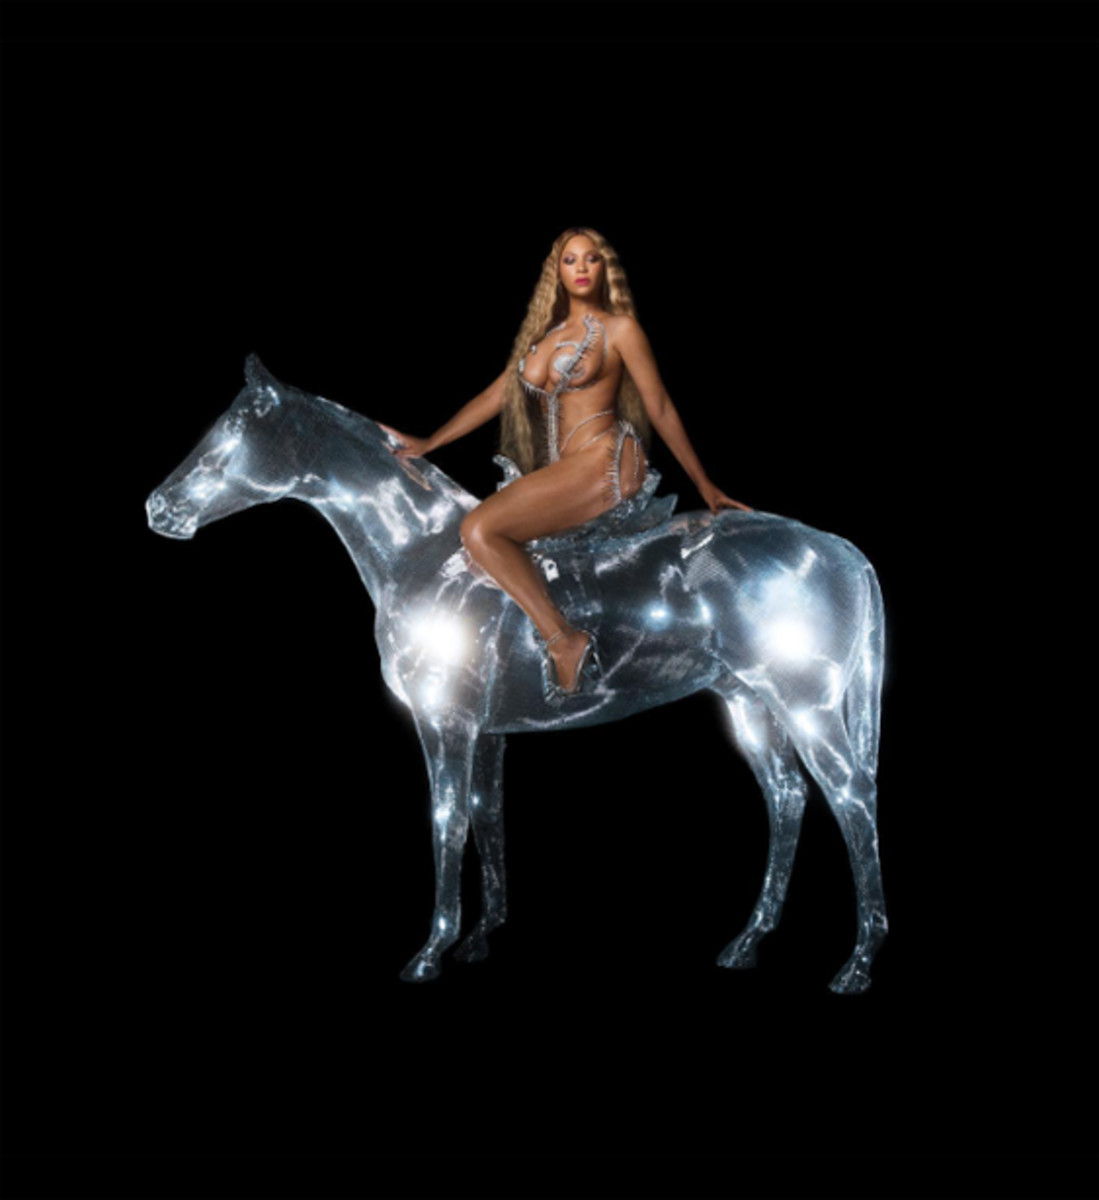 Beyoncé's RENAISSANCE album cover